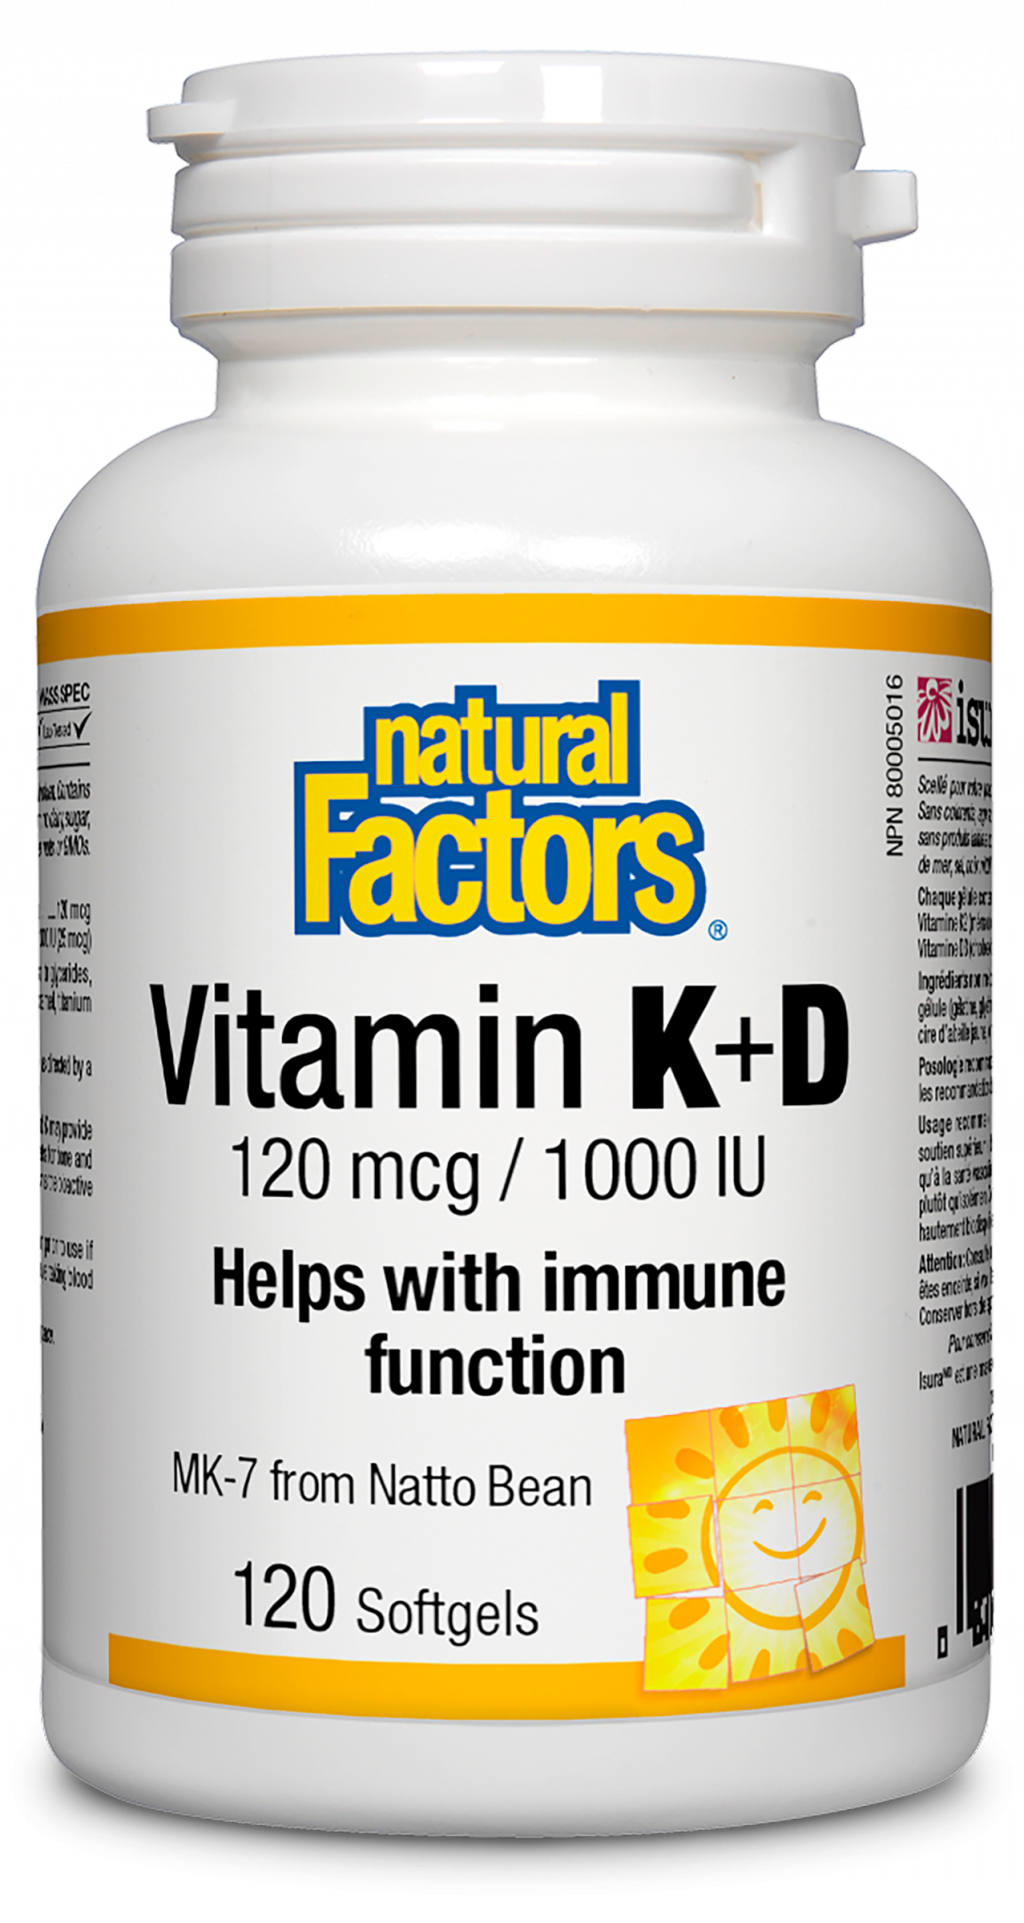 Natural Factors Vitamin K+D  120 mcg / 1000 IU  120 Softgels